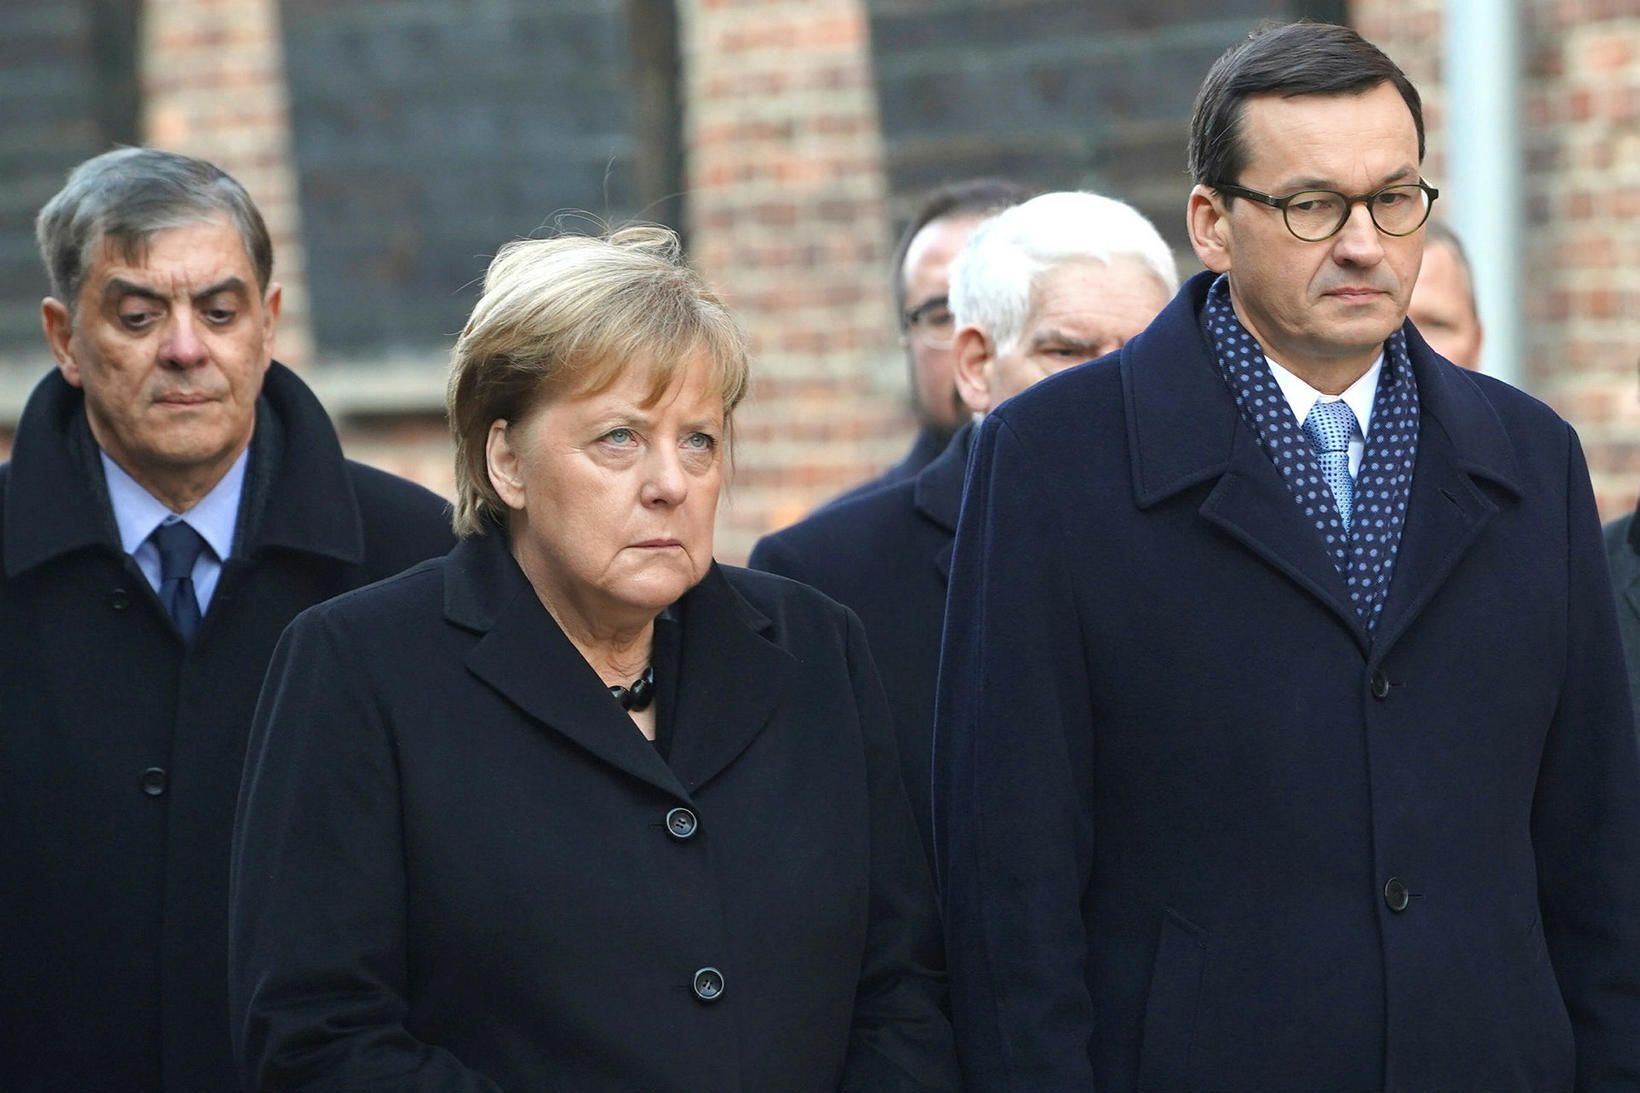 Angela Merkel ásamt pólska forsætisráðherranum Mateusz Morawiecki í Auschwitz-Birkenau.